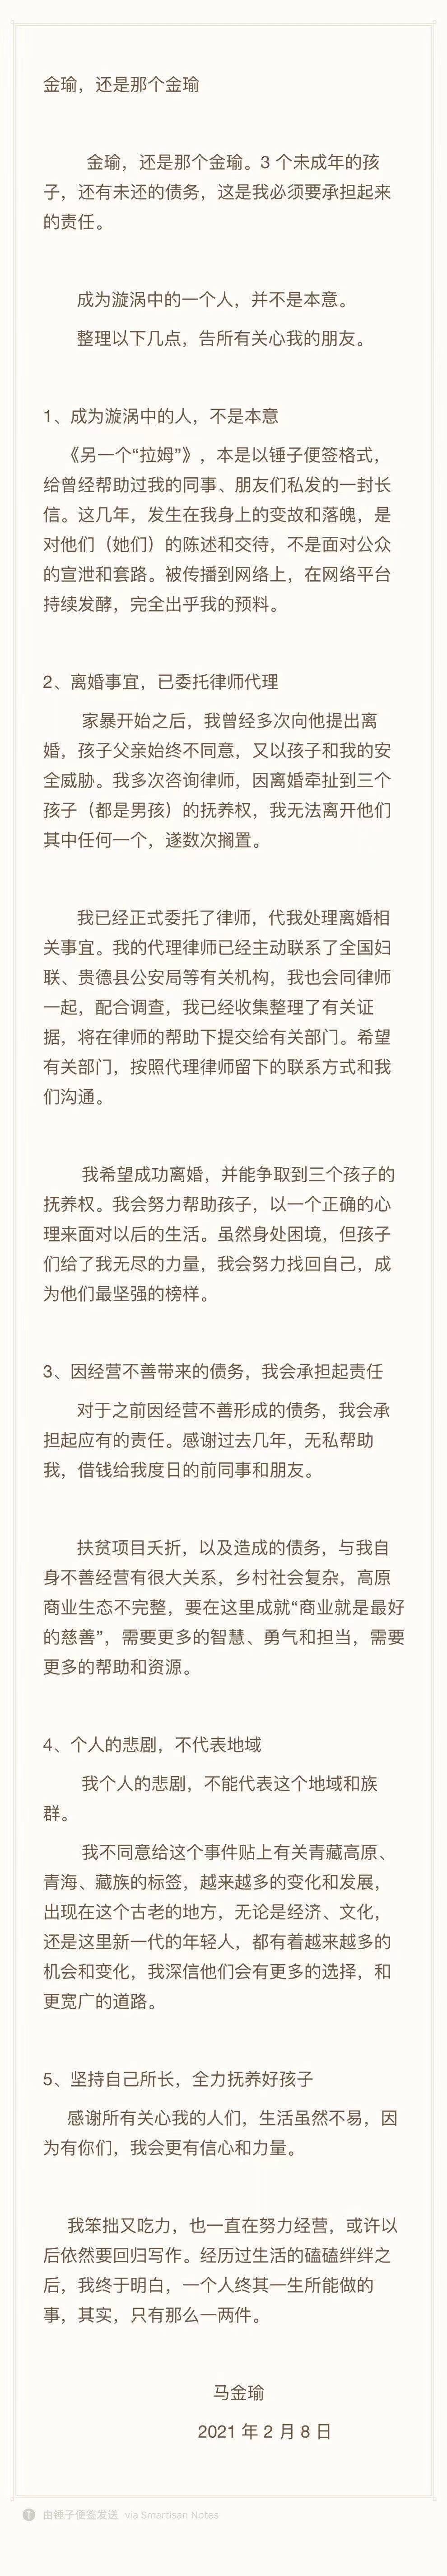 腾讯官方公关总监李伟“青年人观点”被群嘲